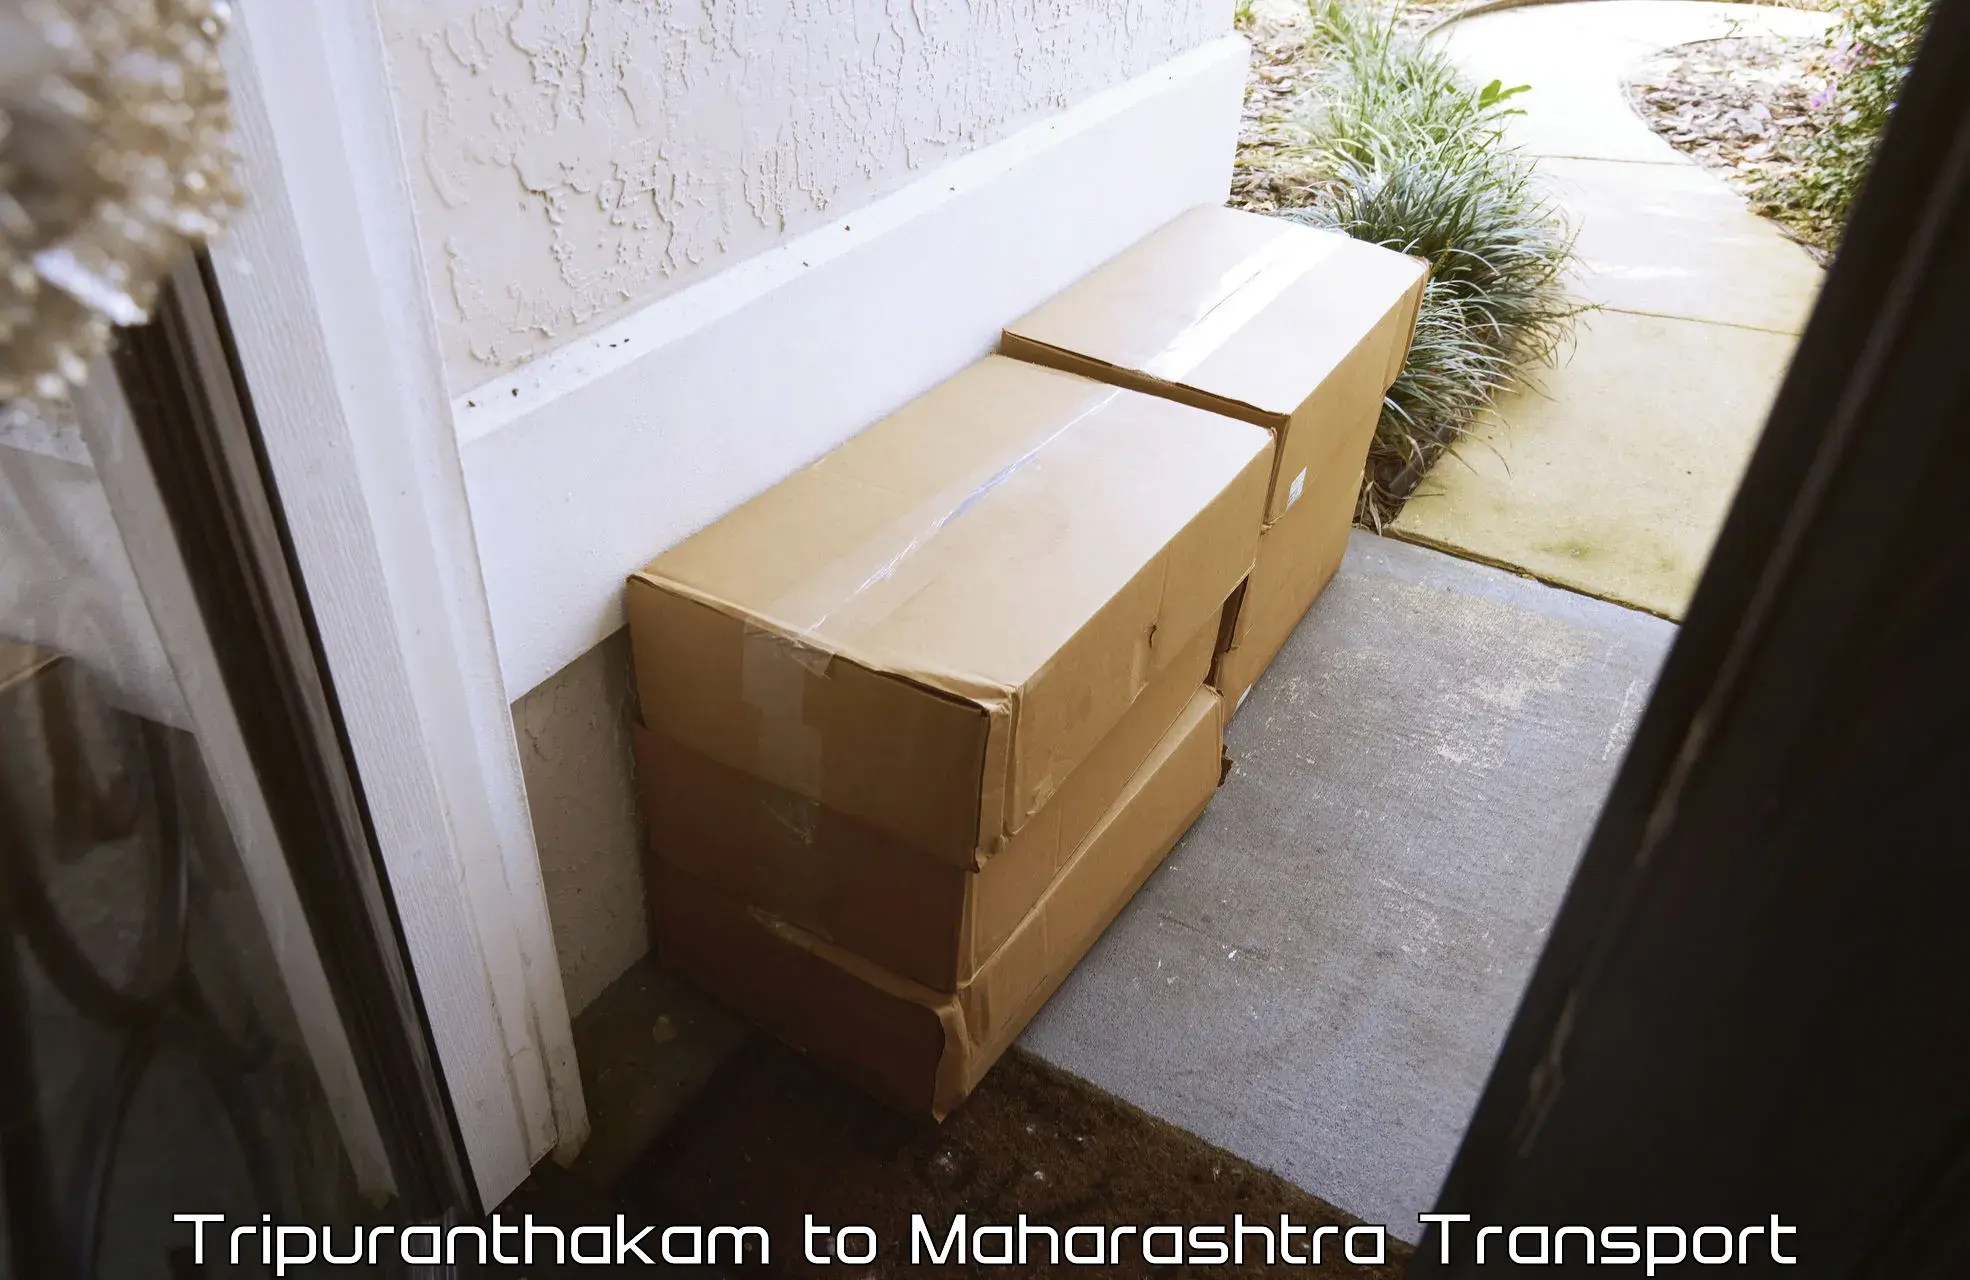 Material transport services Tripuranthakam to Shrirampur